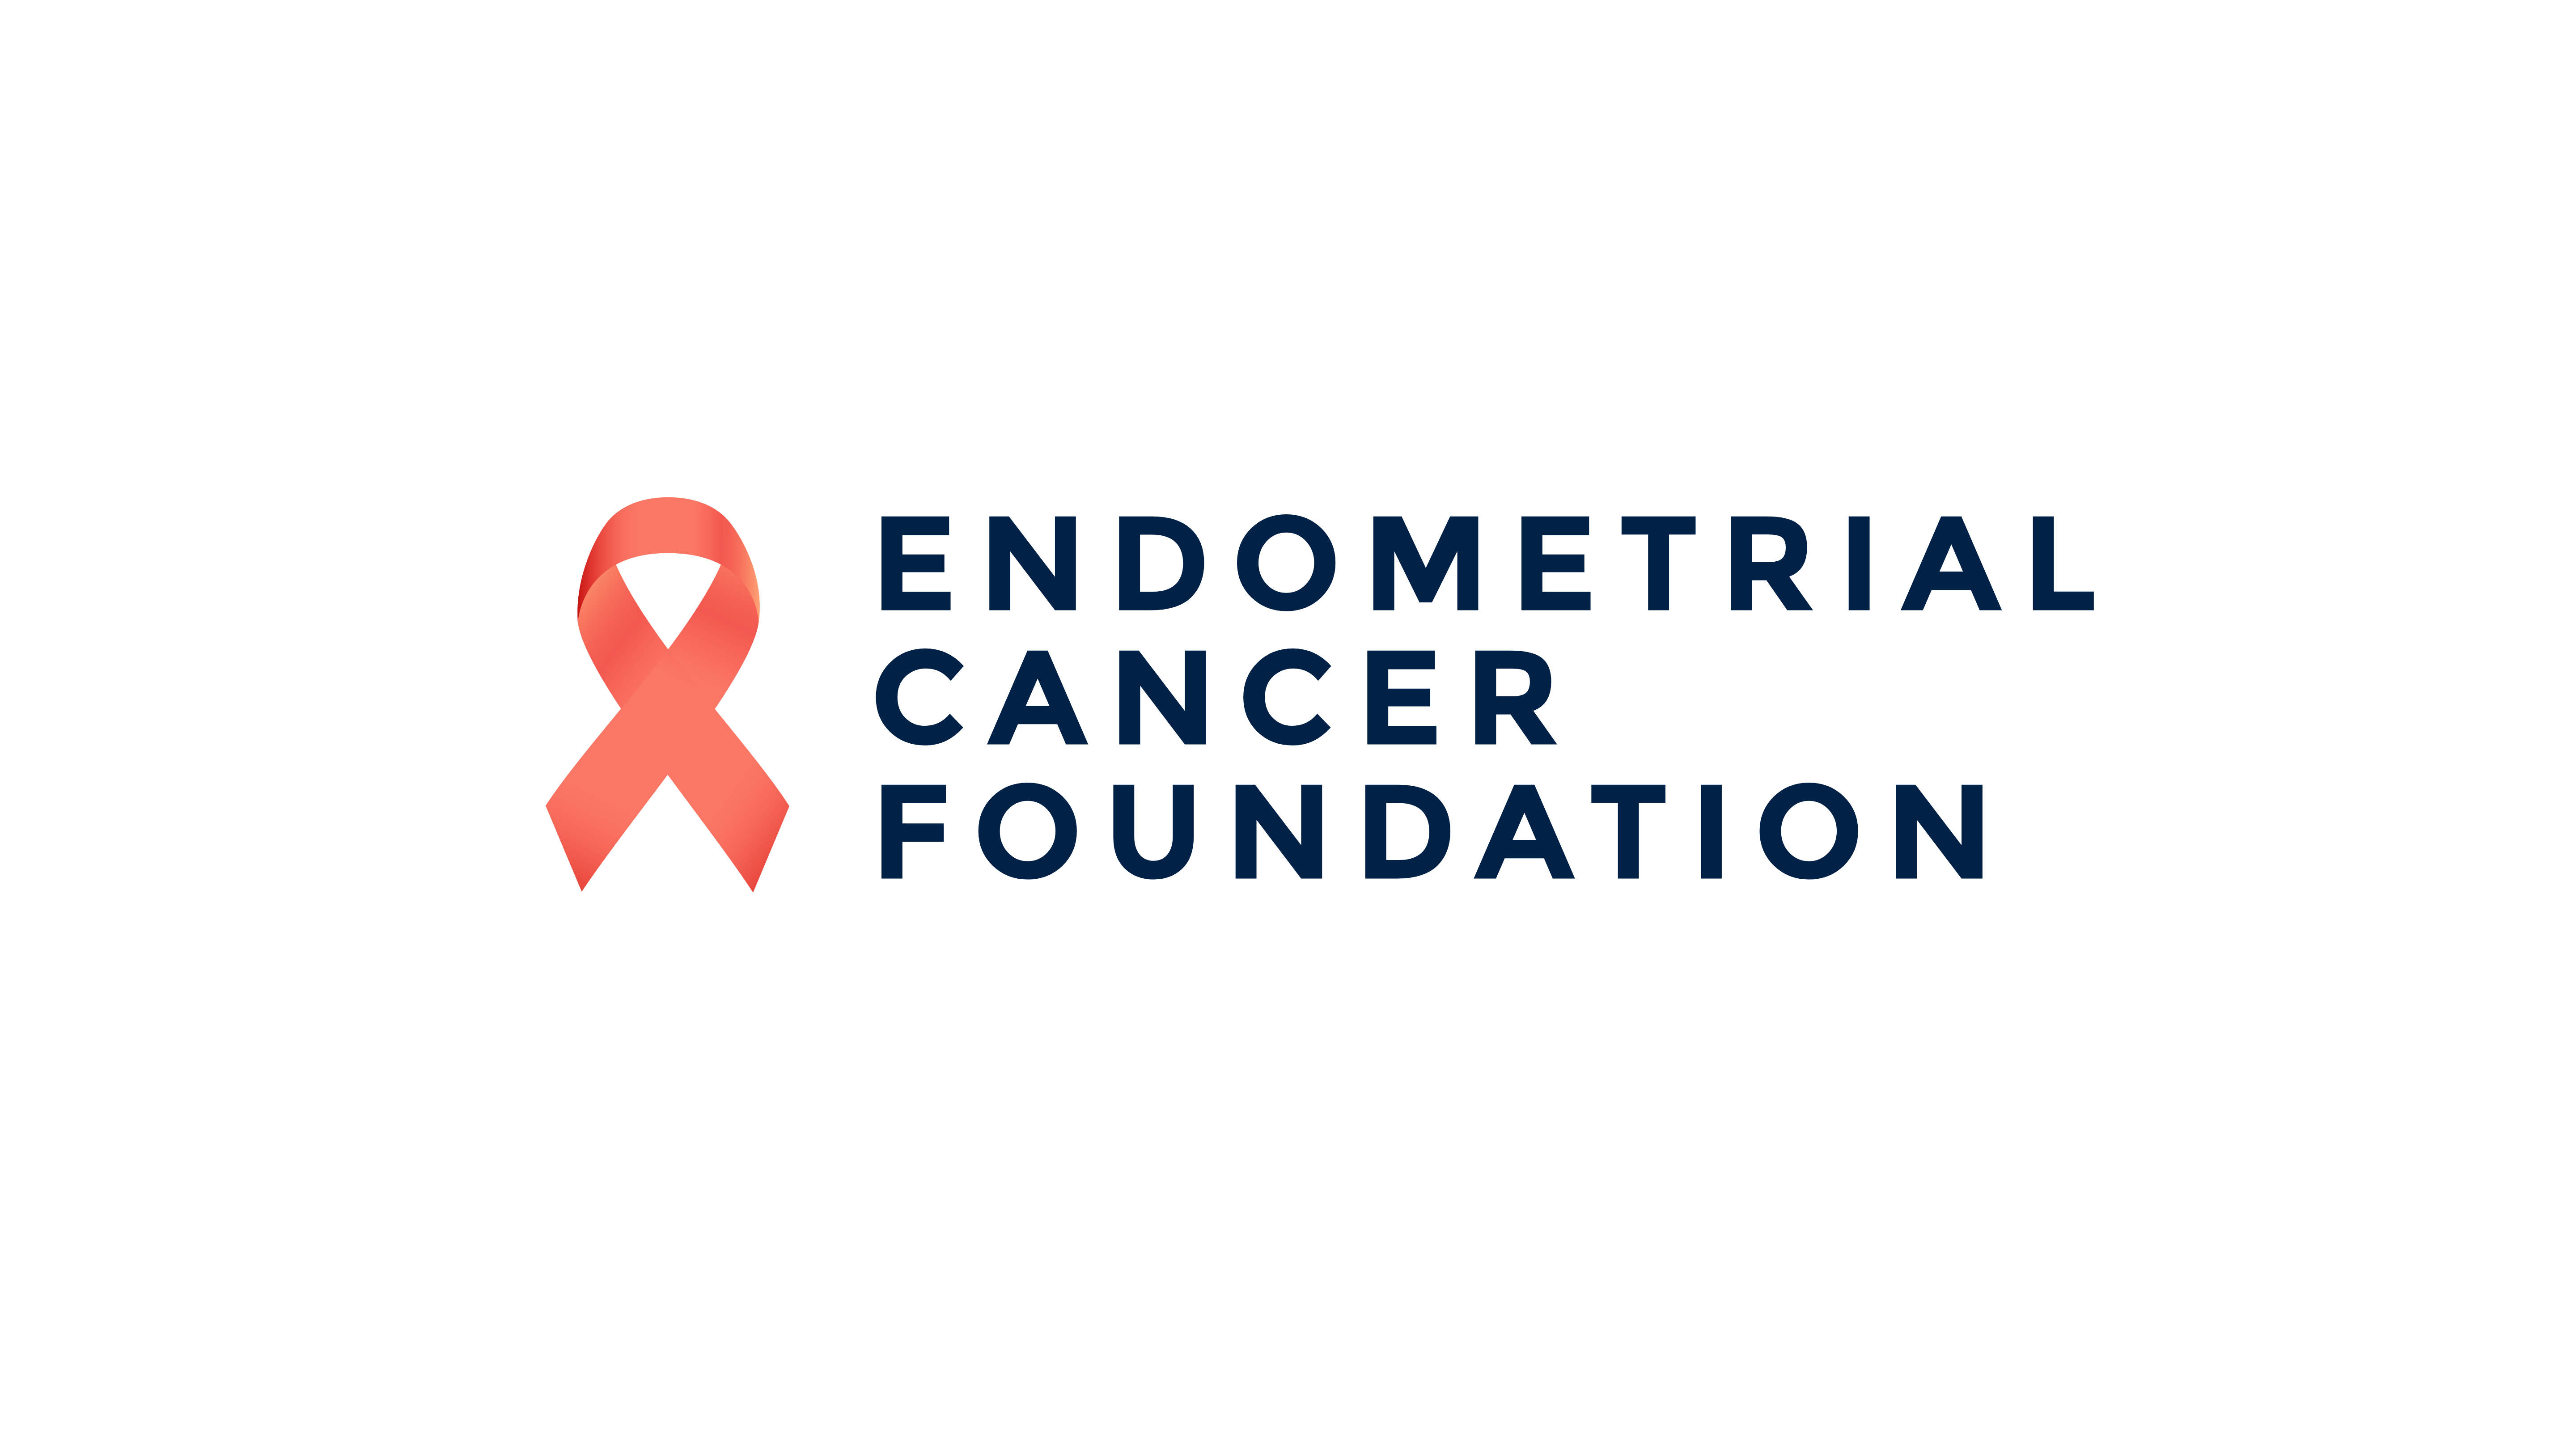 The Endometrial Cancer Foundation logo